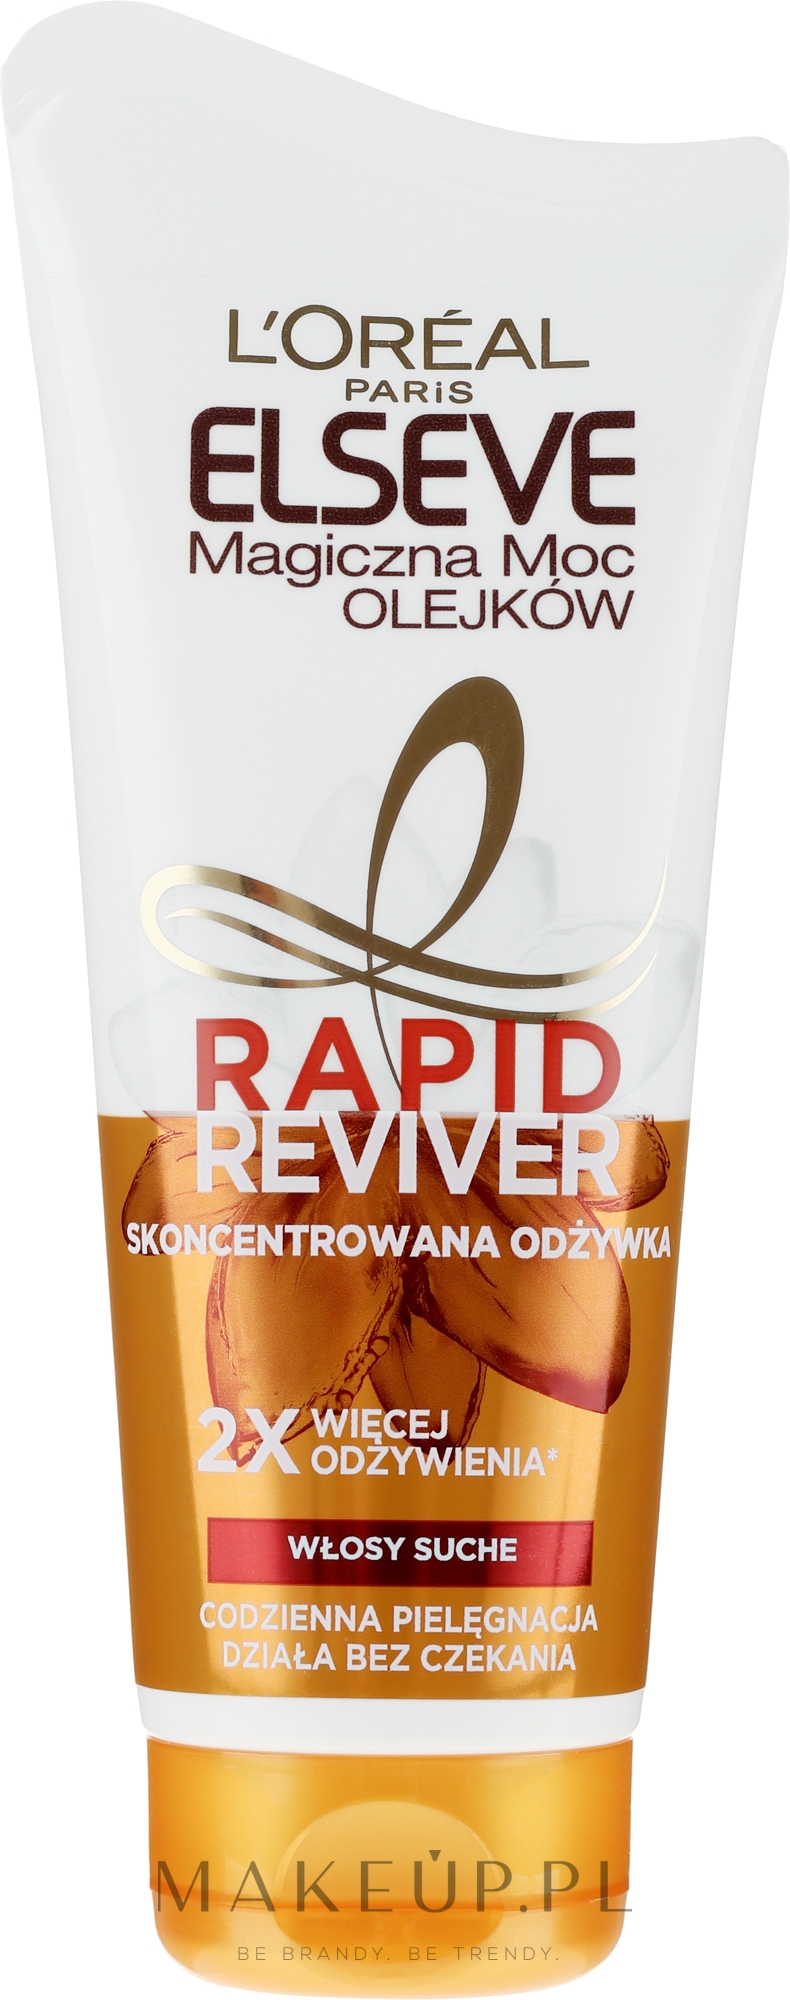 Skoncentrowana odżywka do włosów suchych Magiczna moc olejków - L'Oréal Paris Elseve Rapid Reviver — Zdjęcie 180 ml